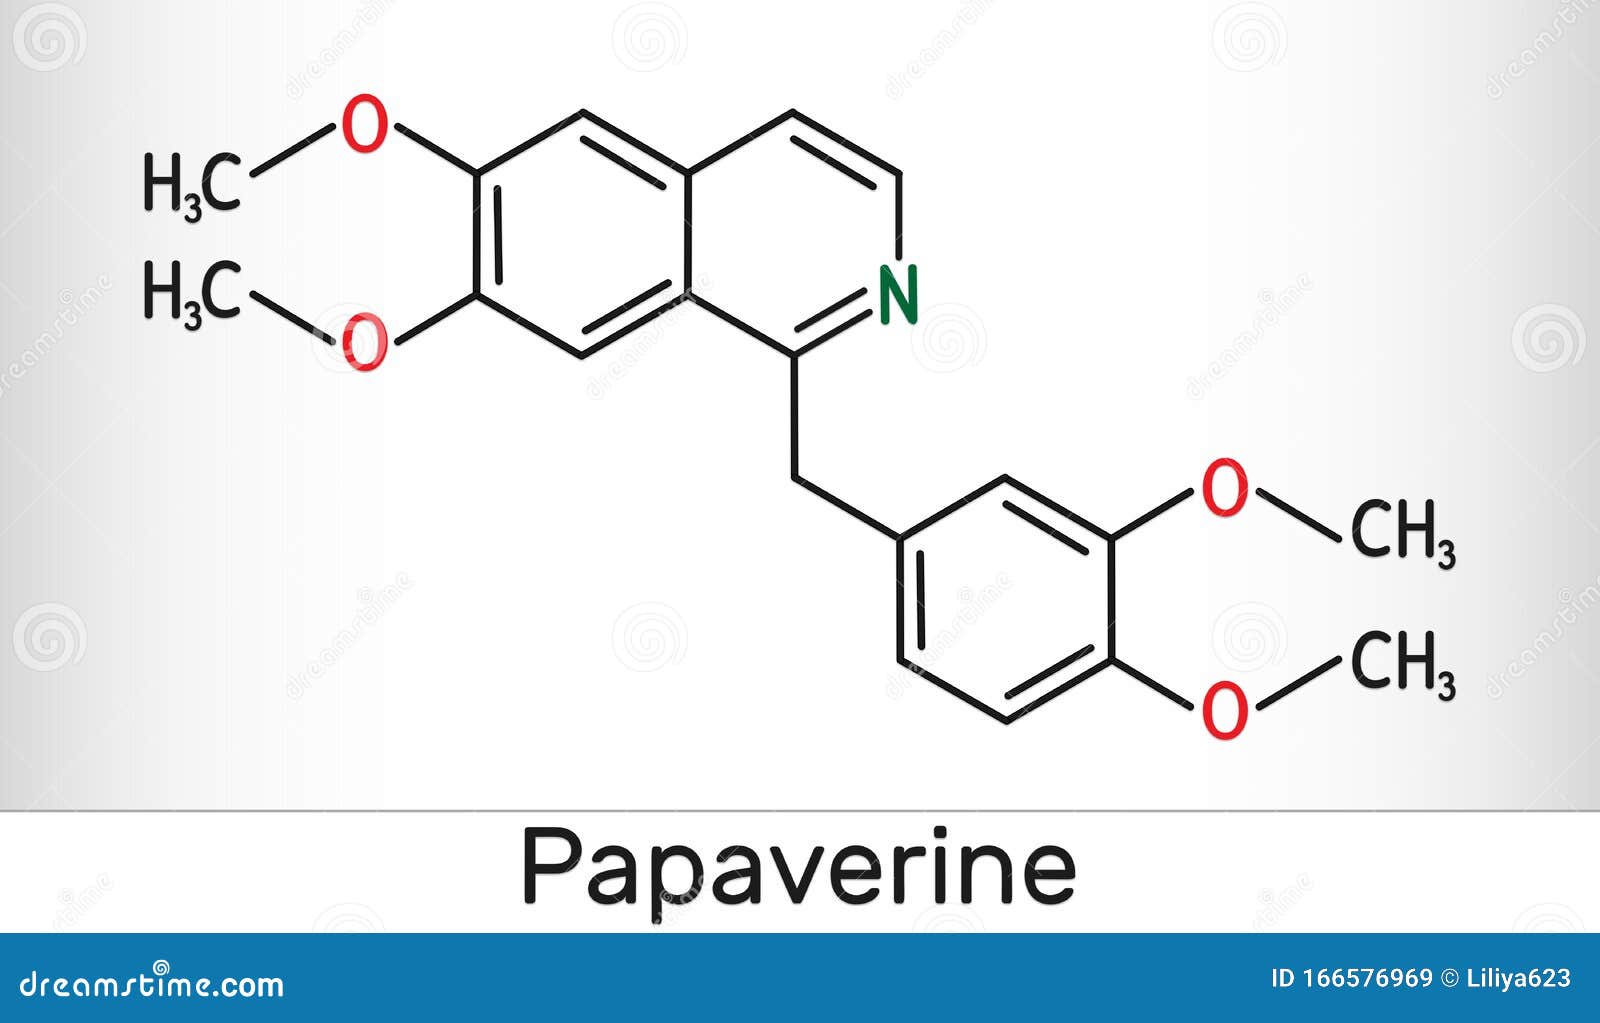 papaverine molecule. it is opium alkaloid antispasmodic drug. molecule model. skeletal chemical formula